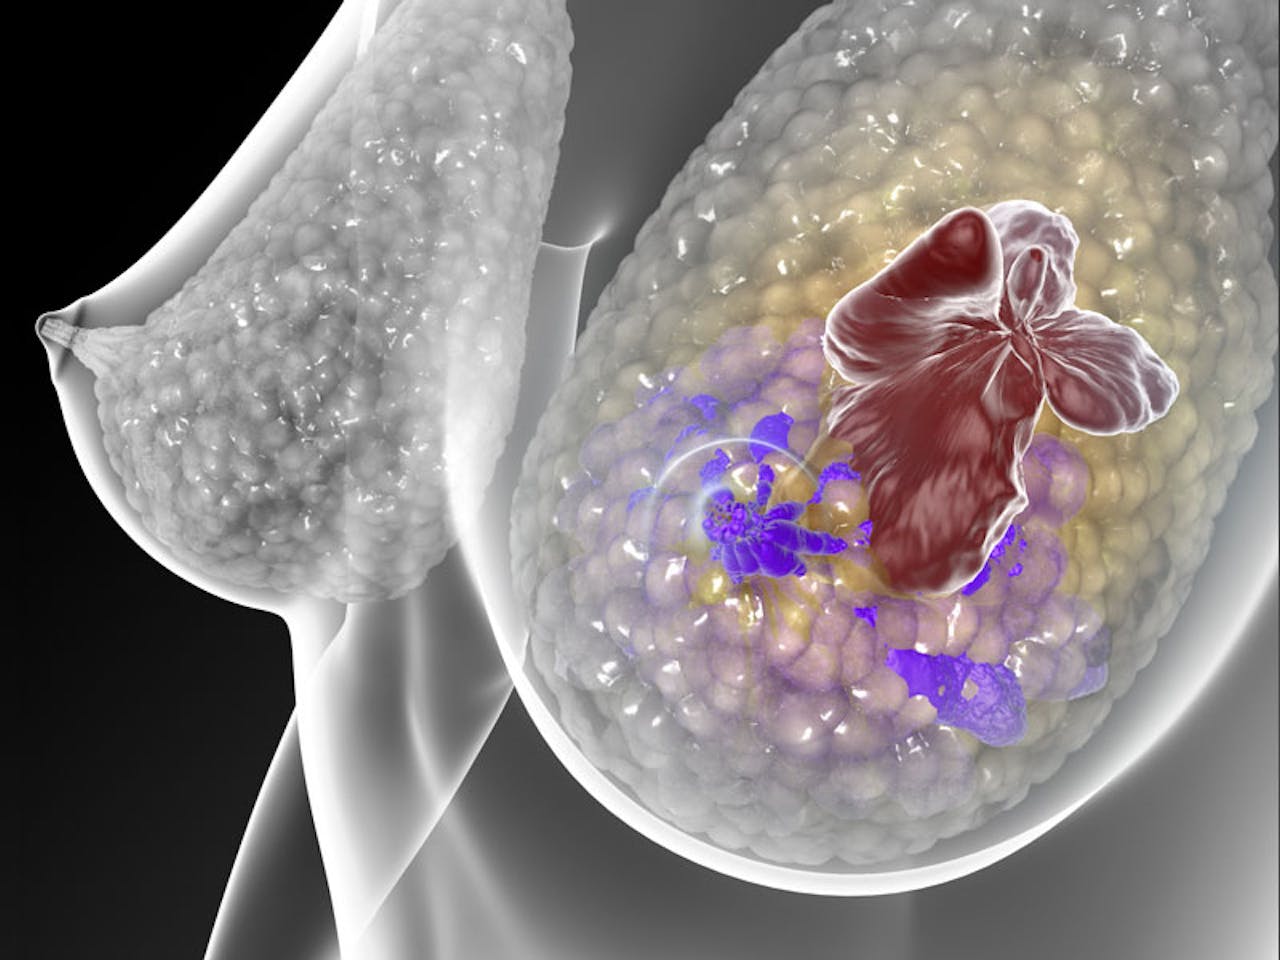 Een tekening van een vrouw met borstkanker, die de doelgerichte therapieën Trastuzumab en lapatinib krijgt.